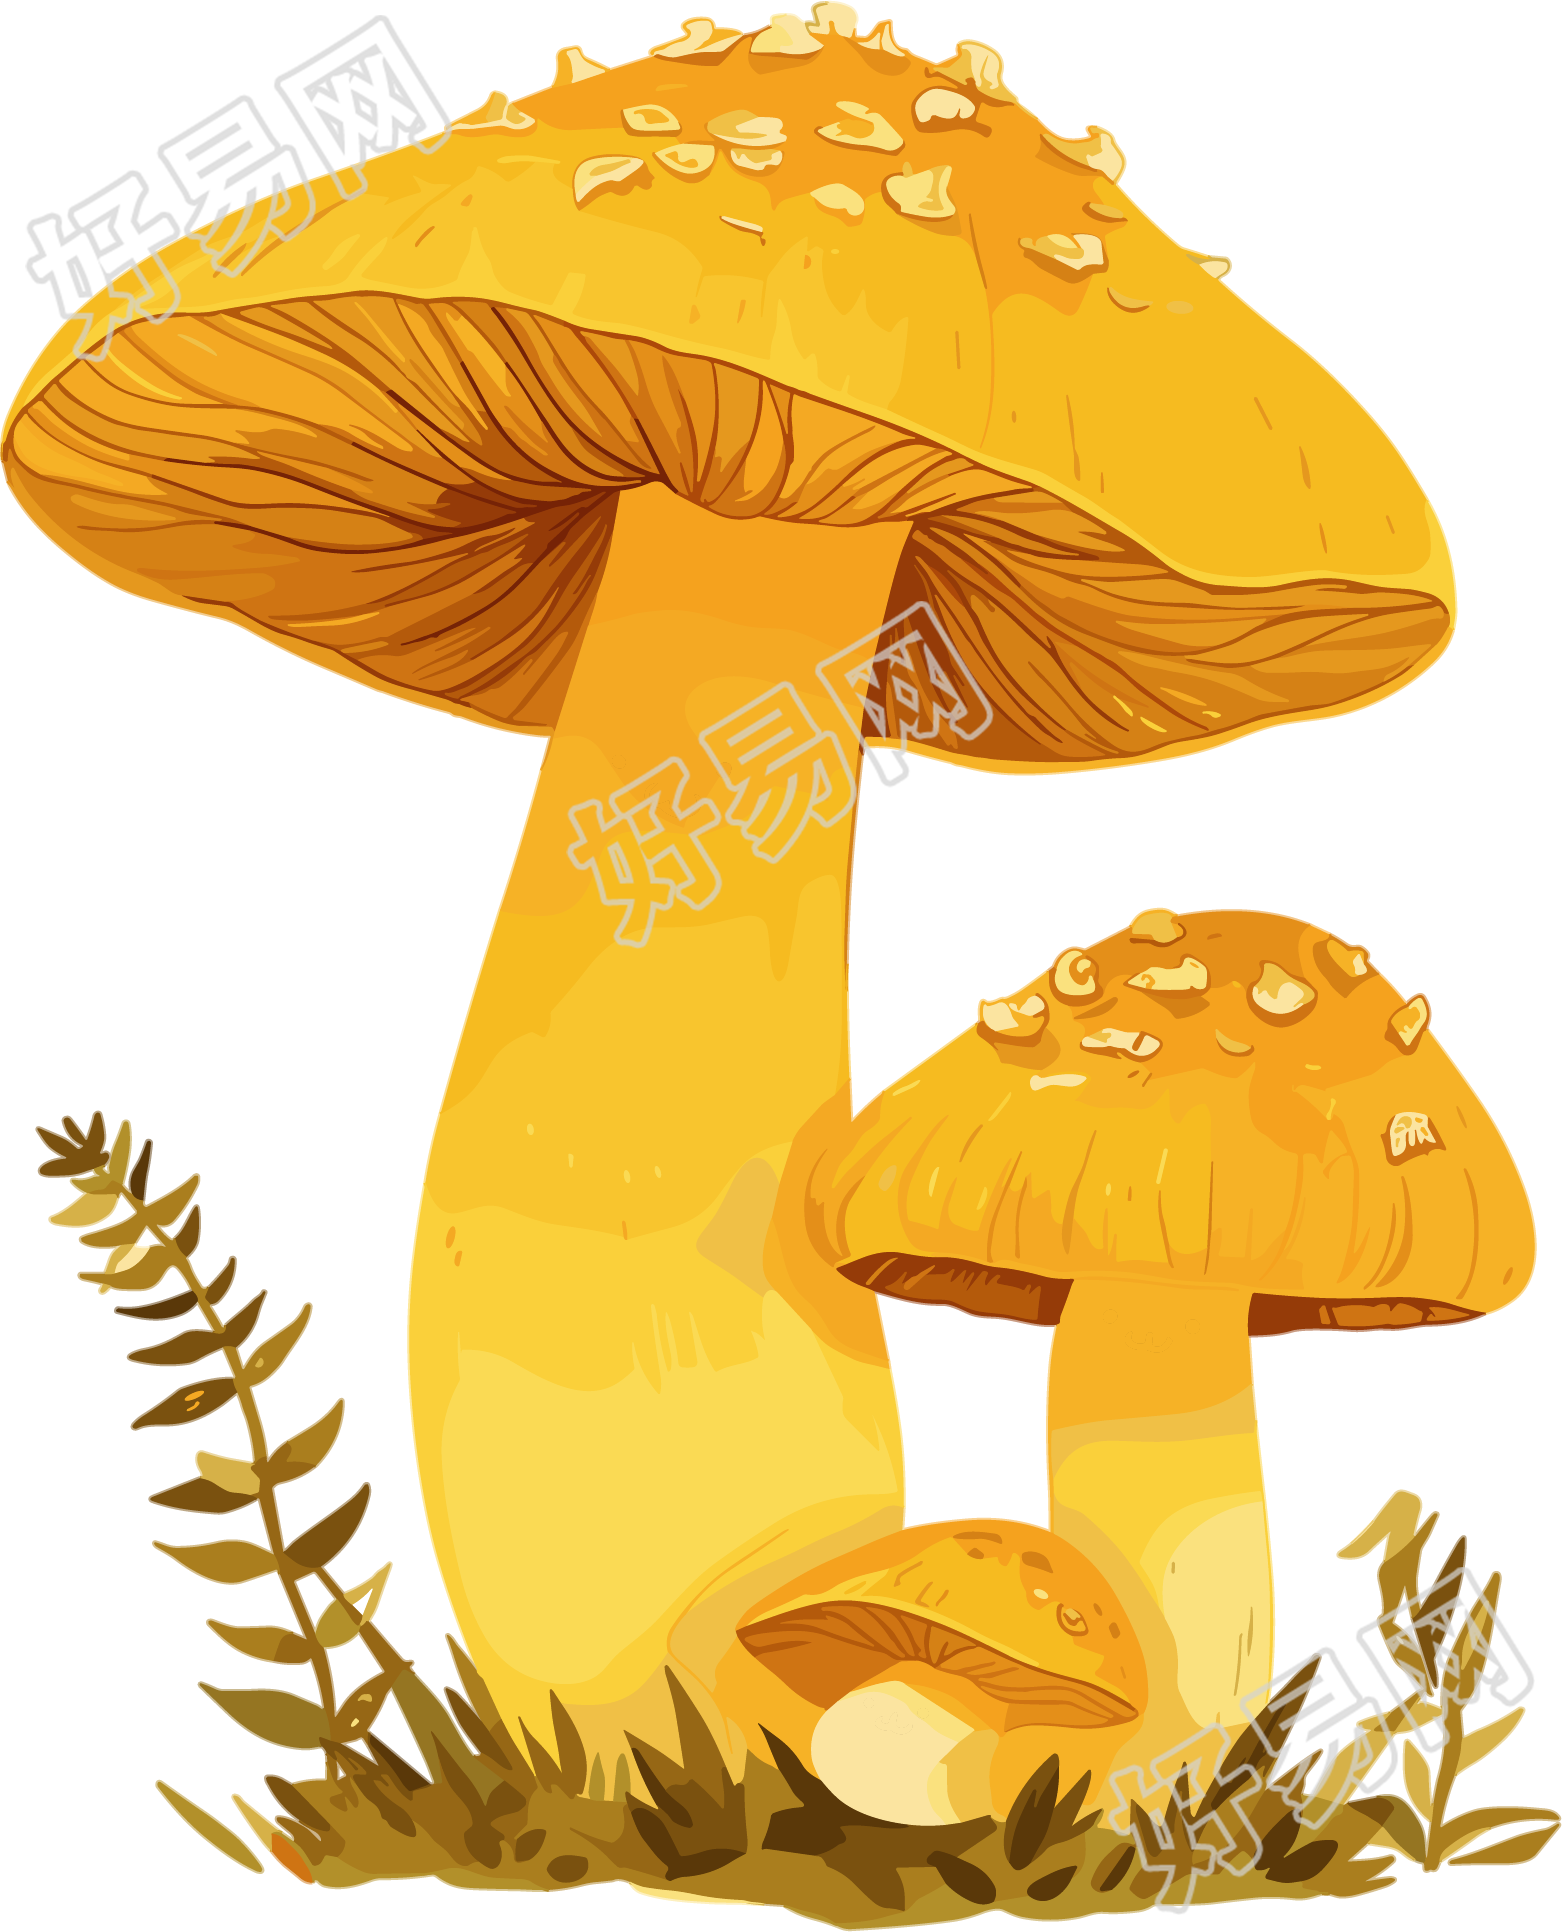 蘑菇插画素材